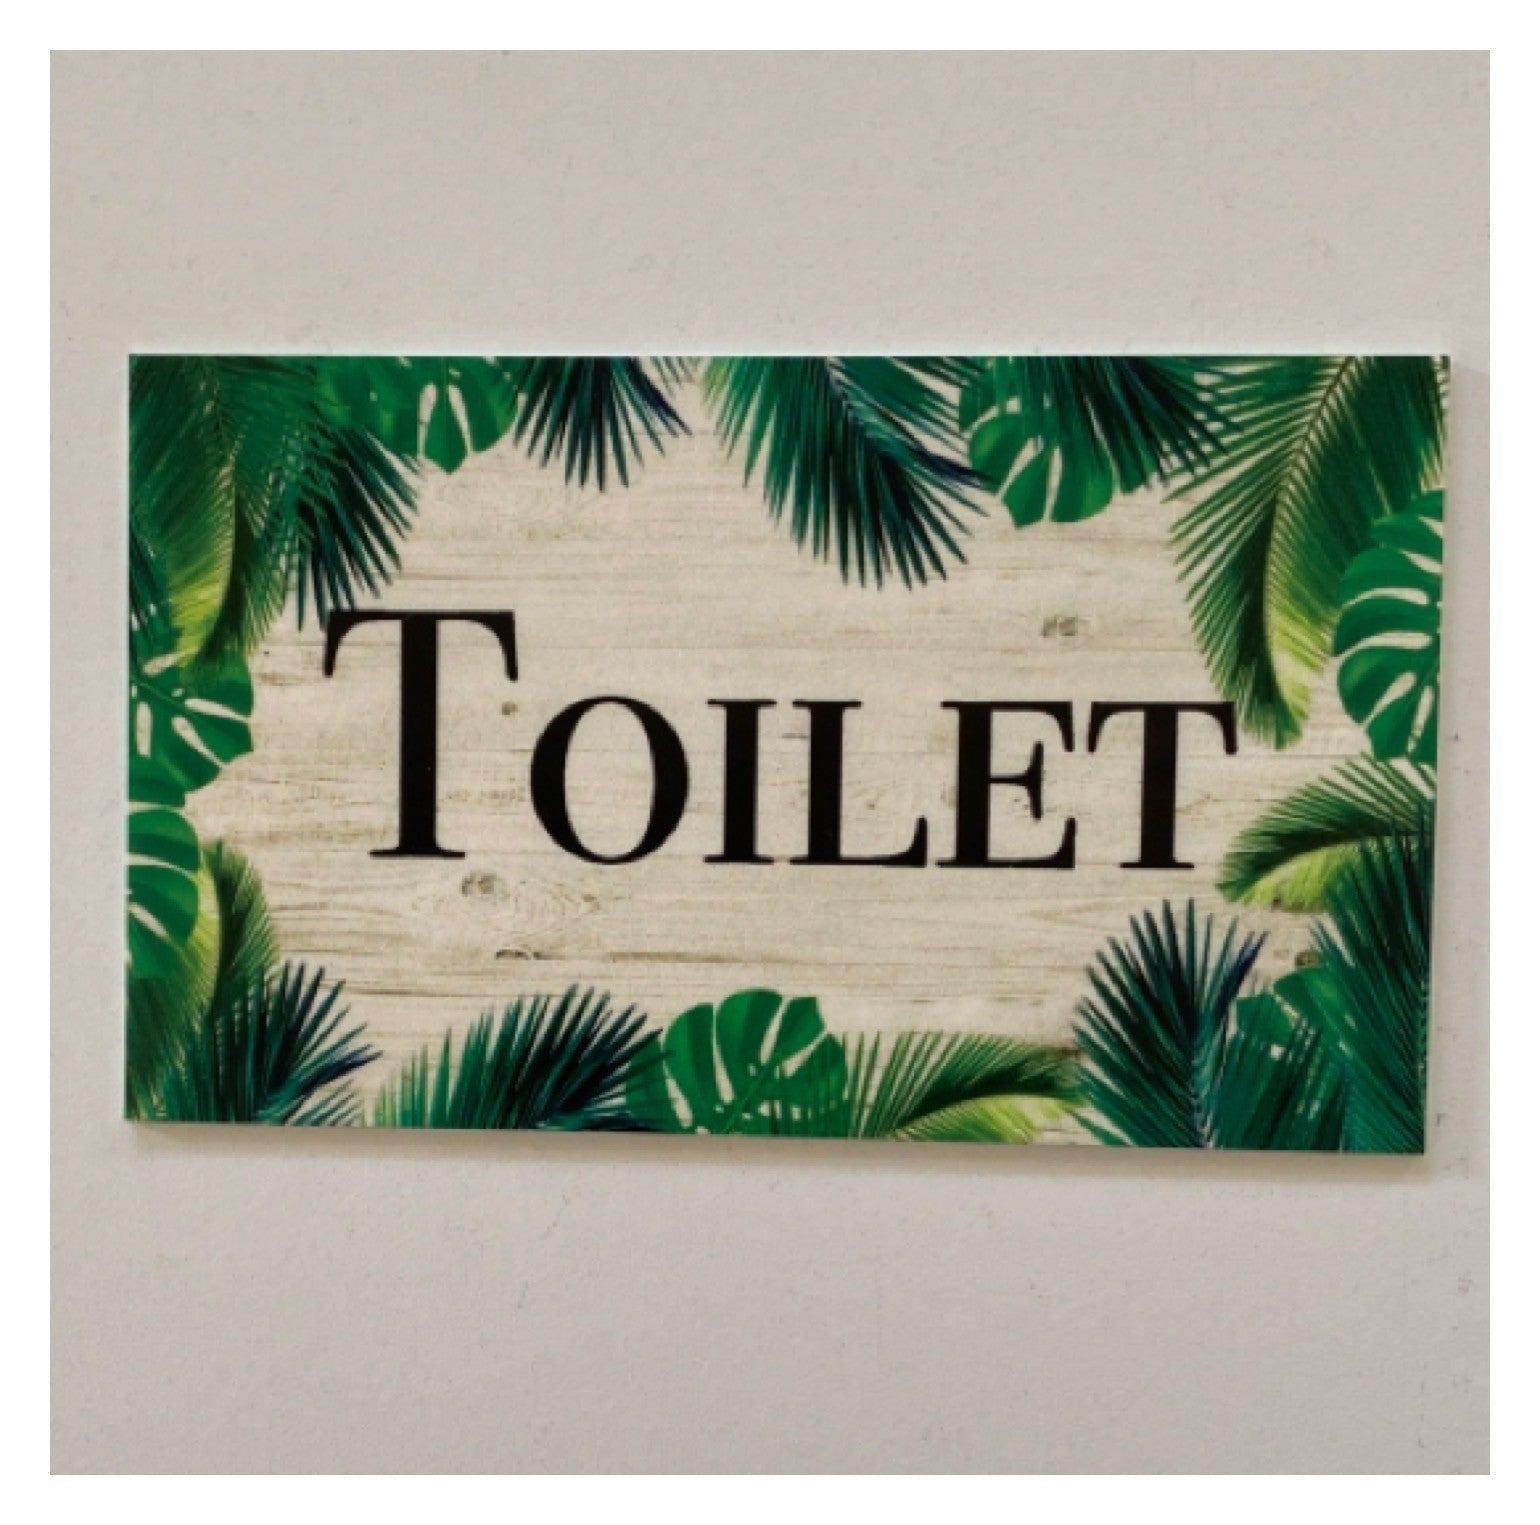 Tropical Door Room Sign Toilet Laundry Bathroom Beach House